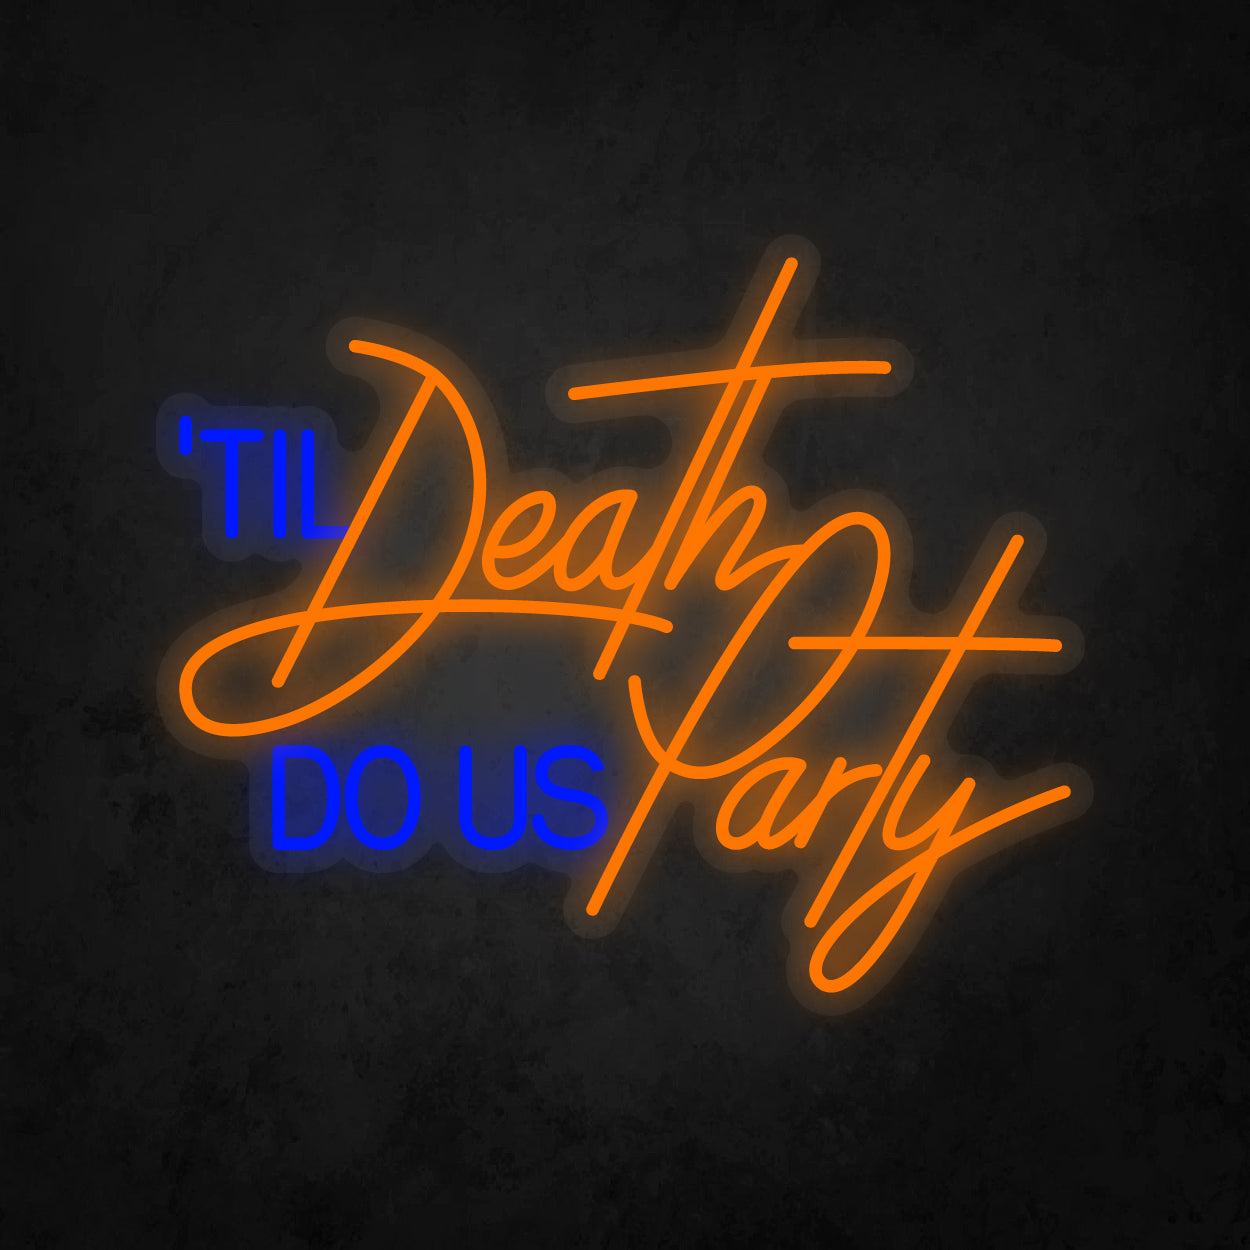 LED Neon Sign - 'til Death Do Us Party